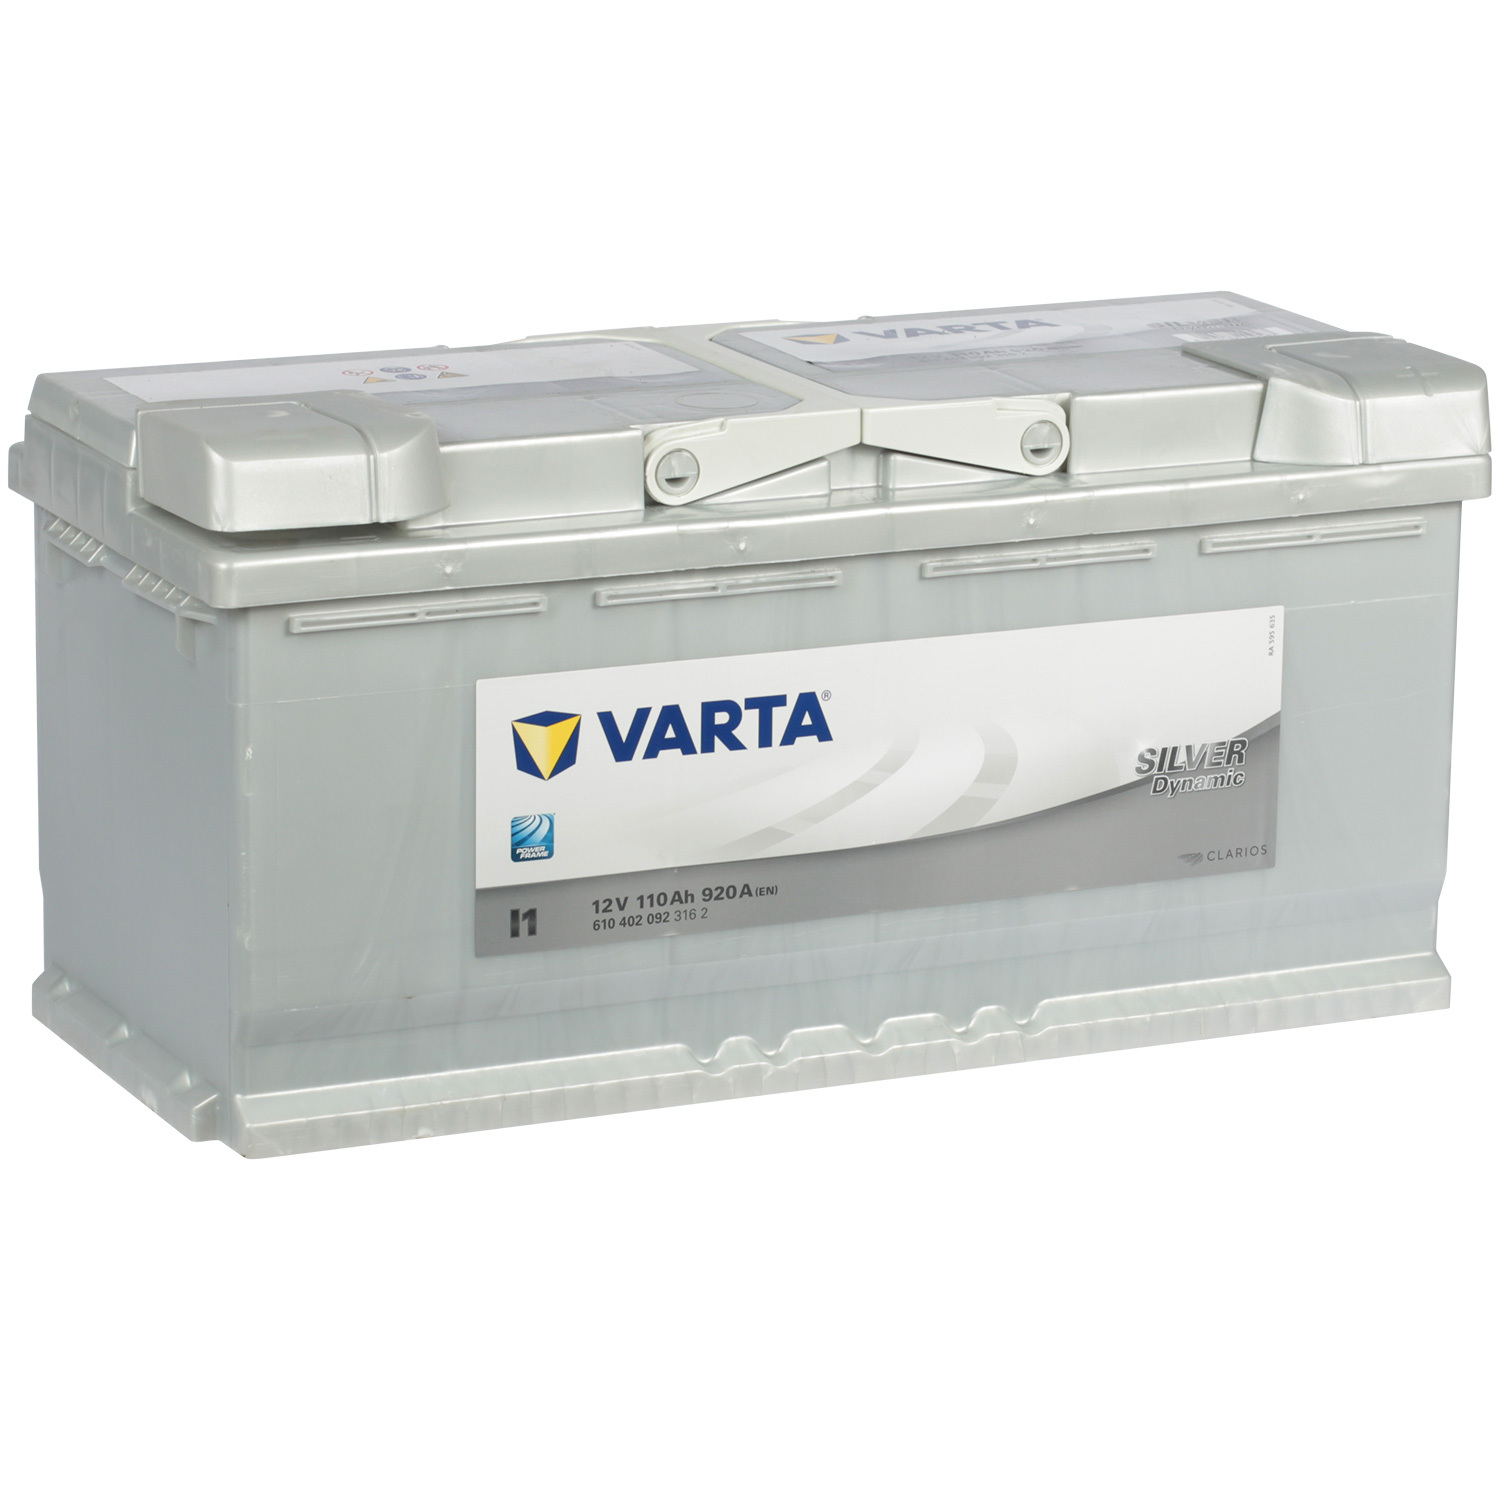 Varta Автомобильный аккумулятор Varta Silver Dynamic I1 110 Ач обратная полярность L6 цена и фото